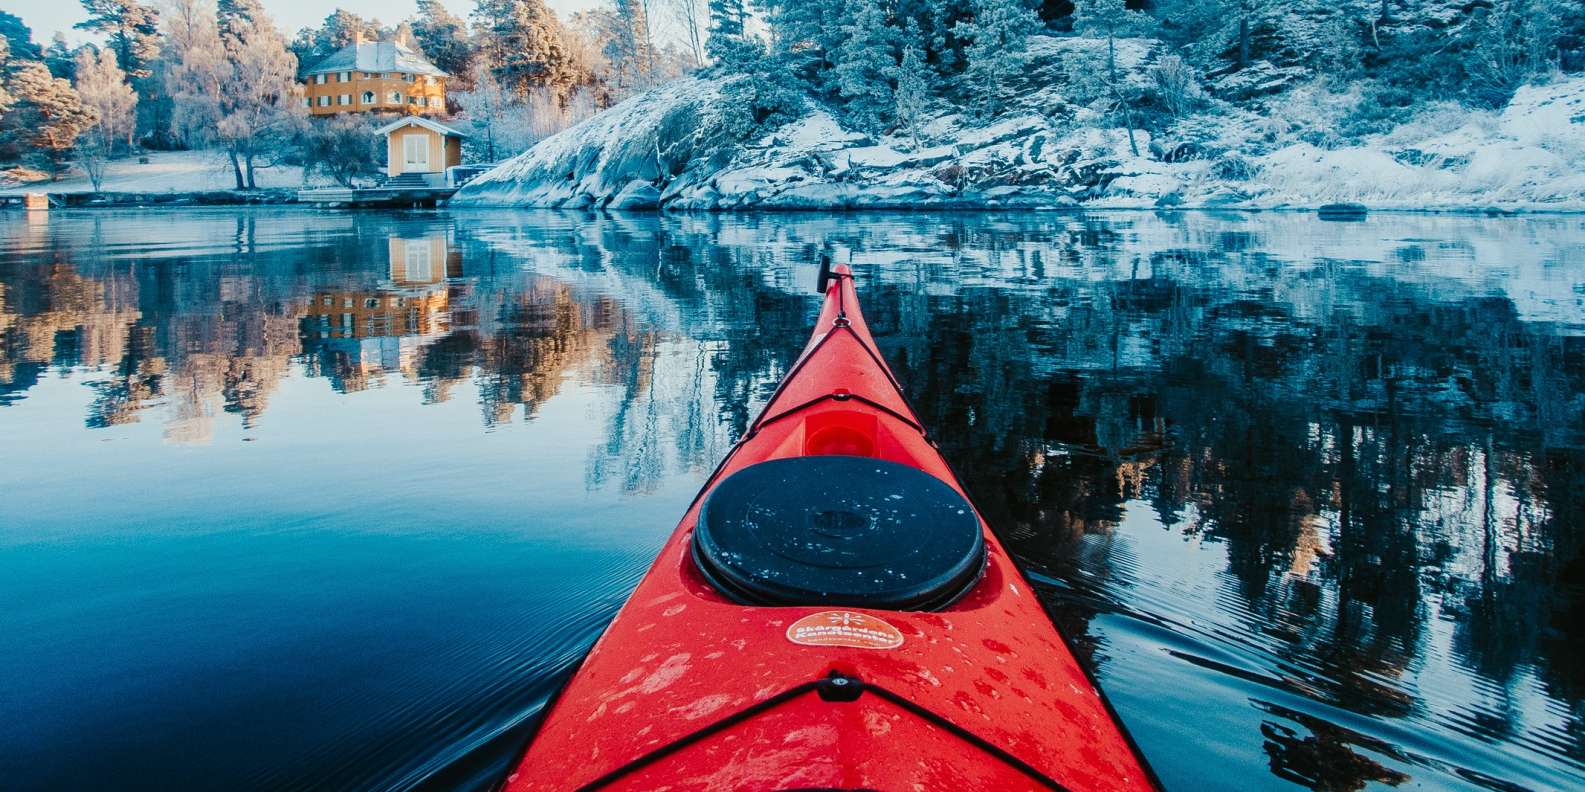 nosotros Lobo con piel de cordero Cambiable Estocolmo: kayak de invierno en el archipiélago y experiencia Fika |  GetYourGuide